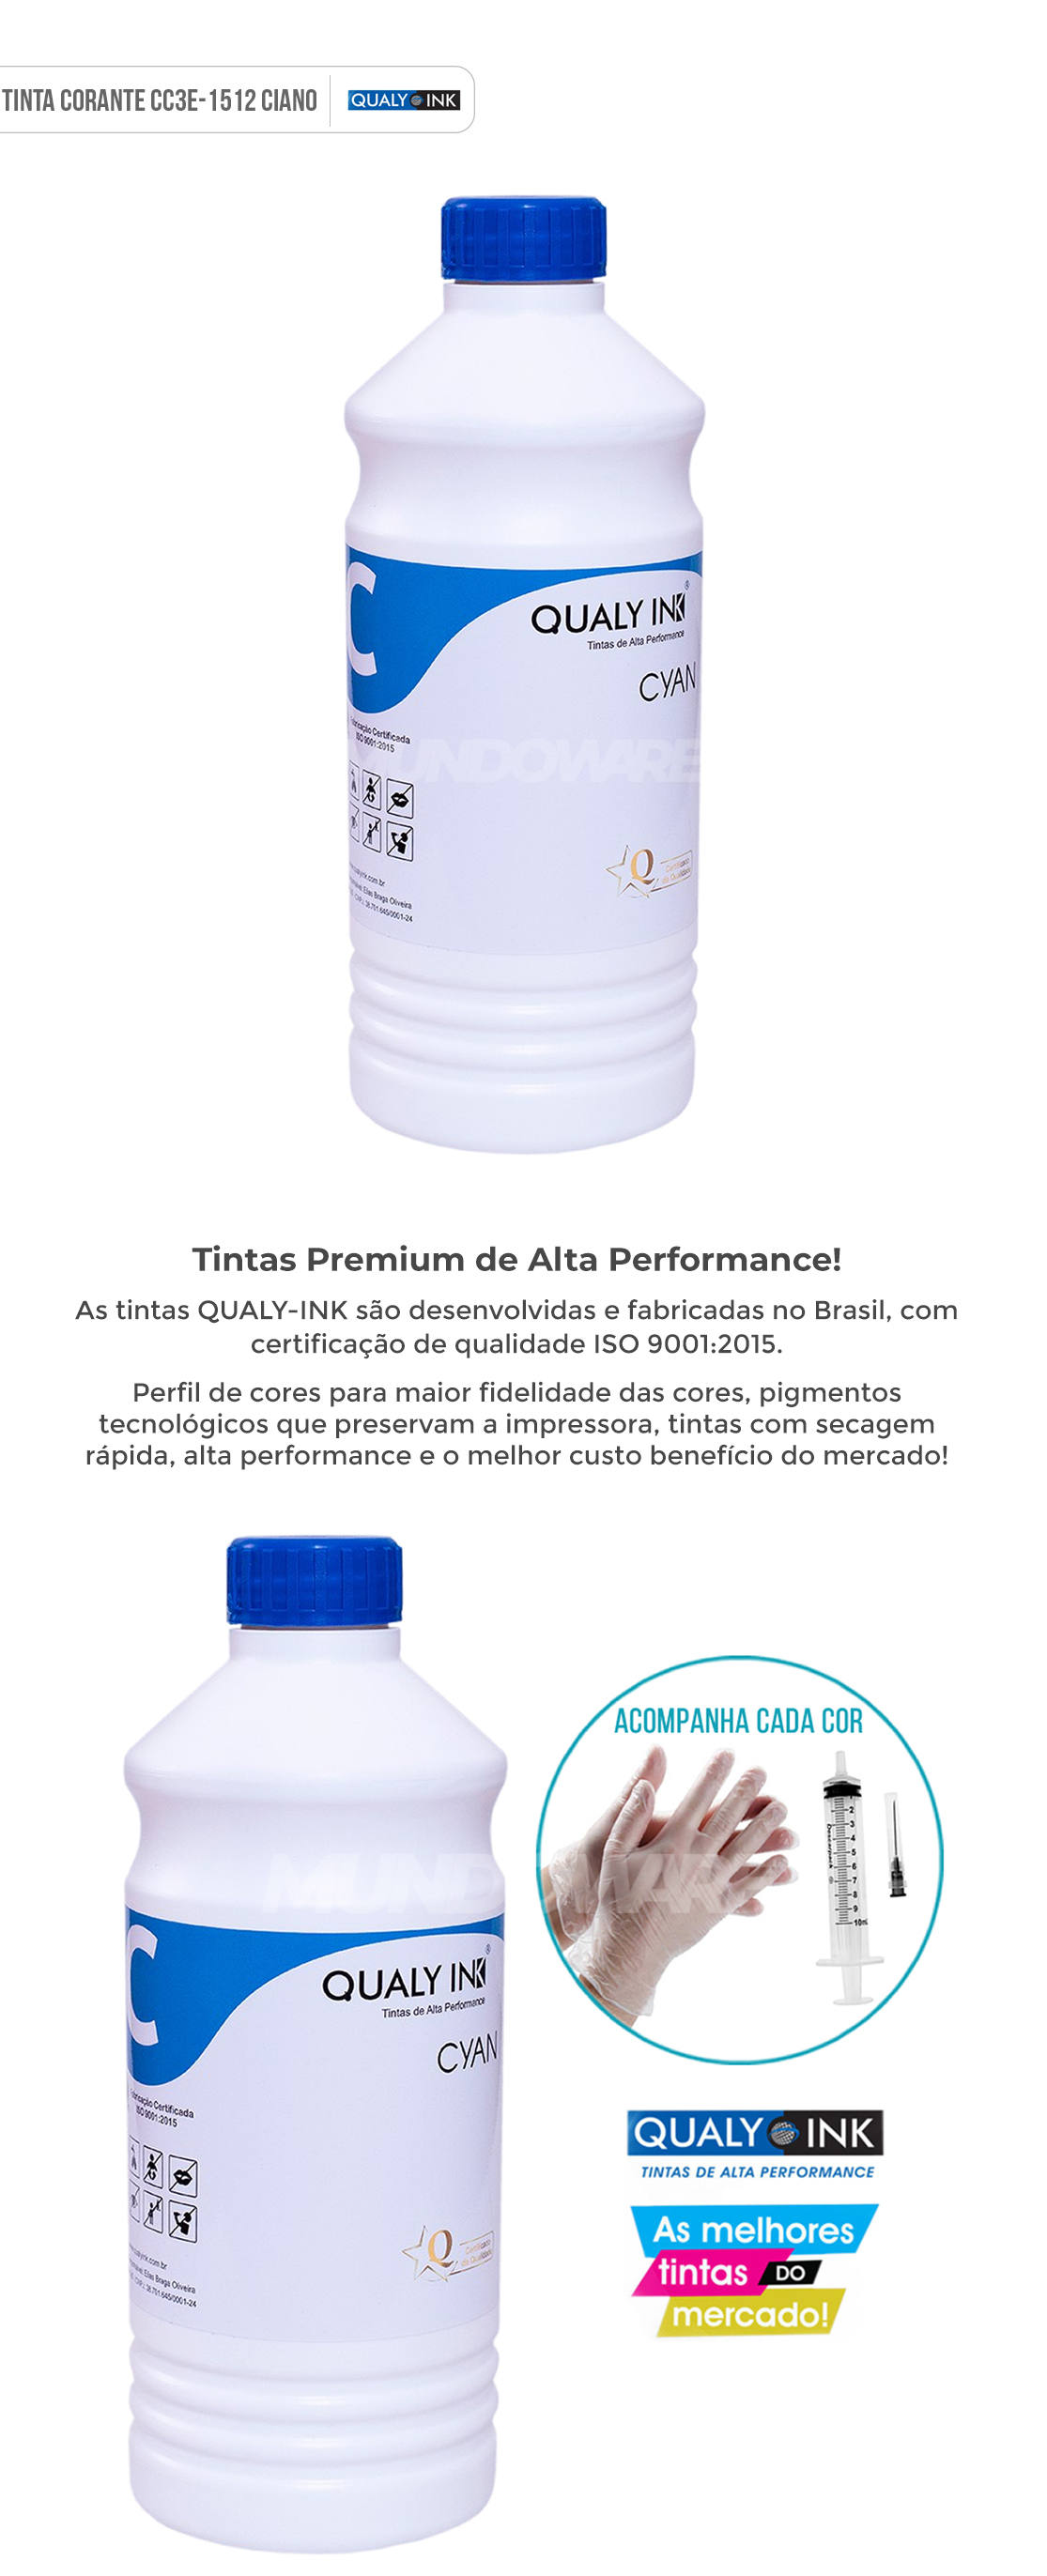 Refil de Tinta Qualy-Ink Ciano Corante para Epson série 664 impressoras L100 L110 L120 L200 L210 L220 L300 L355 L365 L375 L380 L395 L396 L455 L475 L495 L550 L555 L565 L575 L606